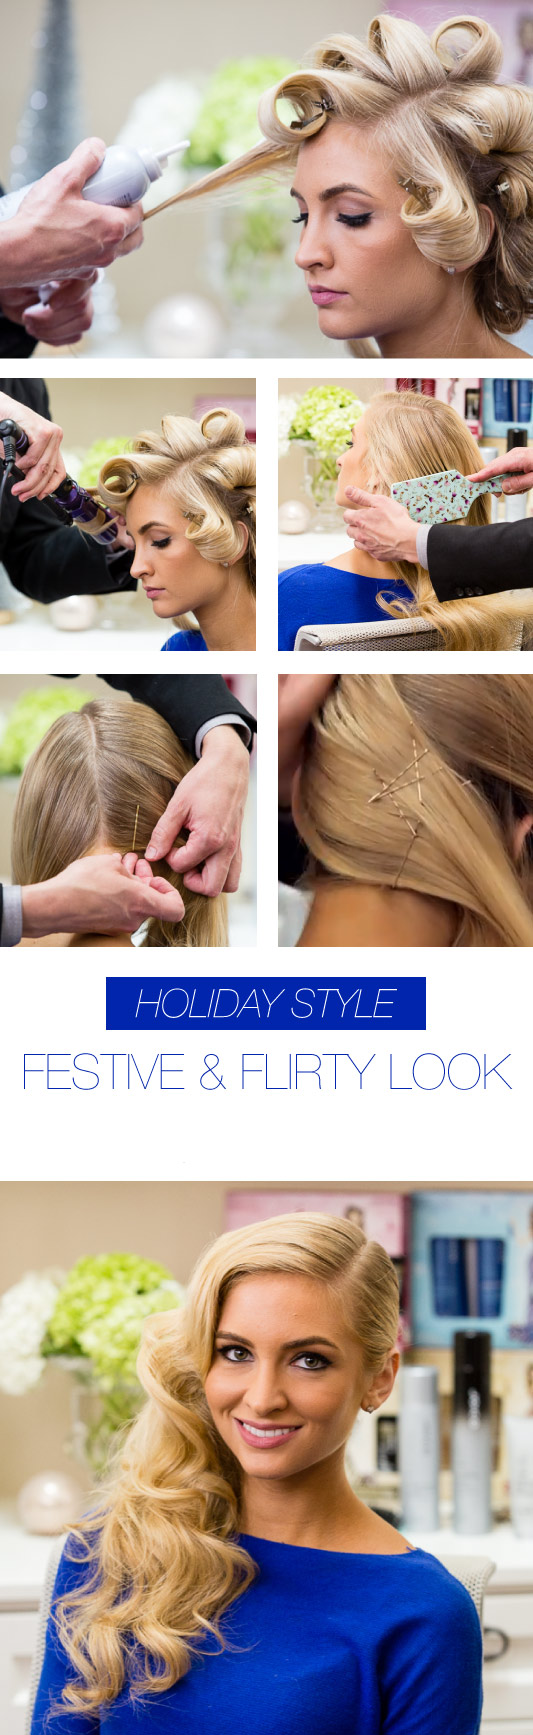 Festive & Flirty Look hair tutorial 